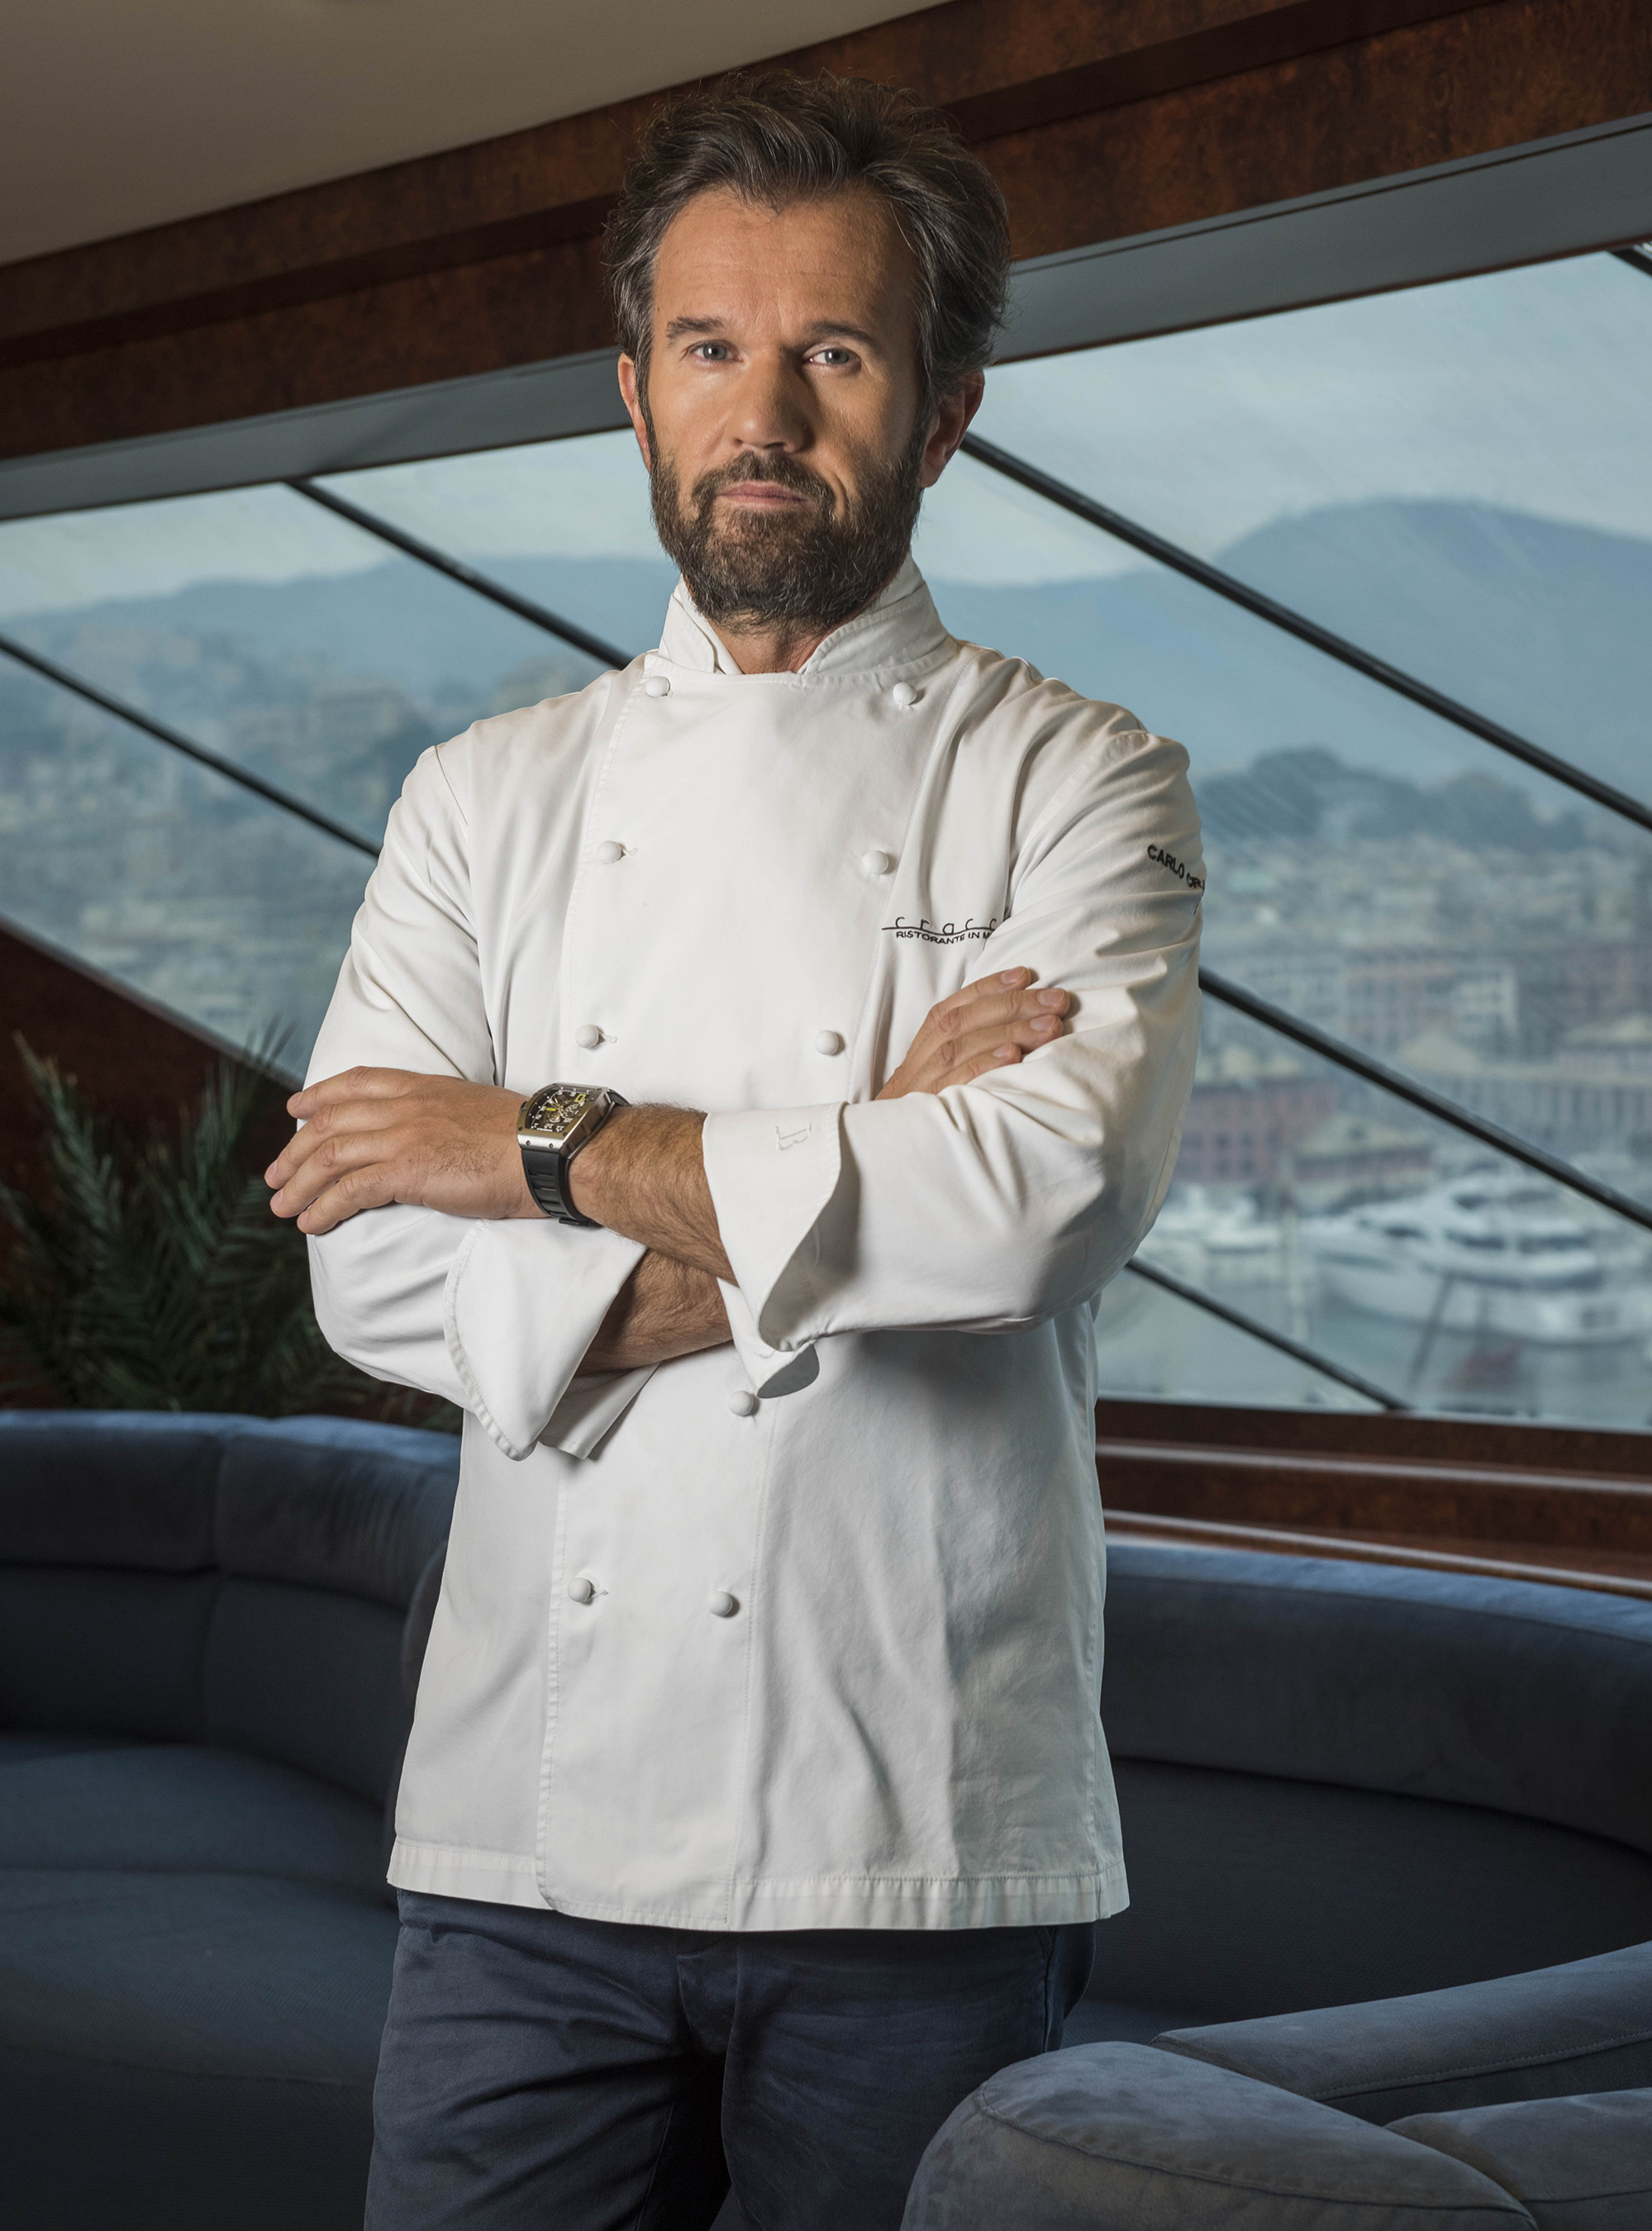 2-Michelin Starred Chef, Progressive Italian Cuisine